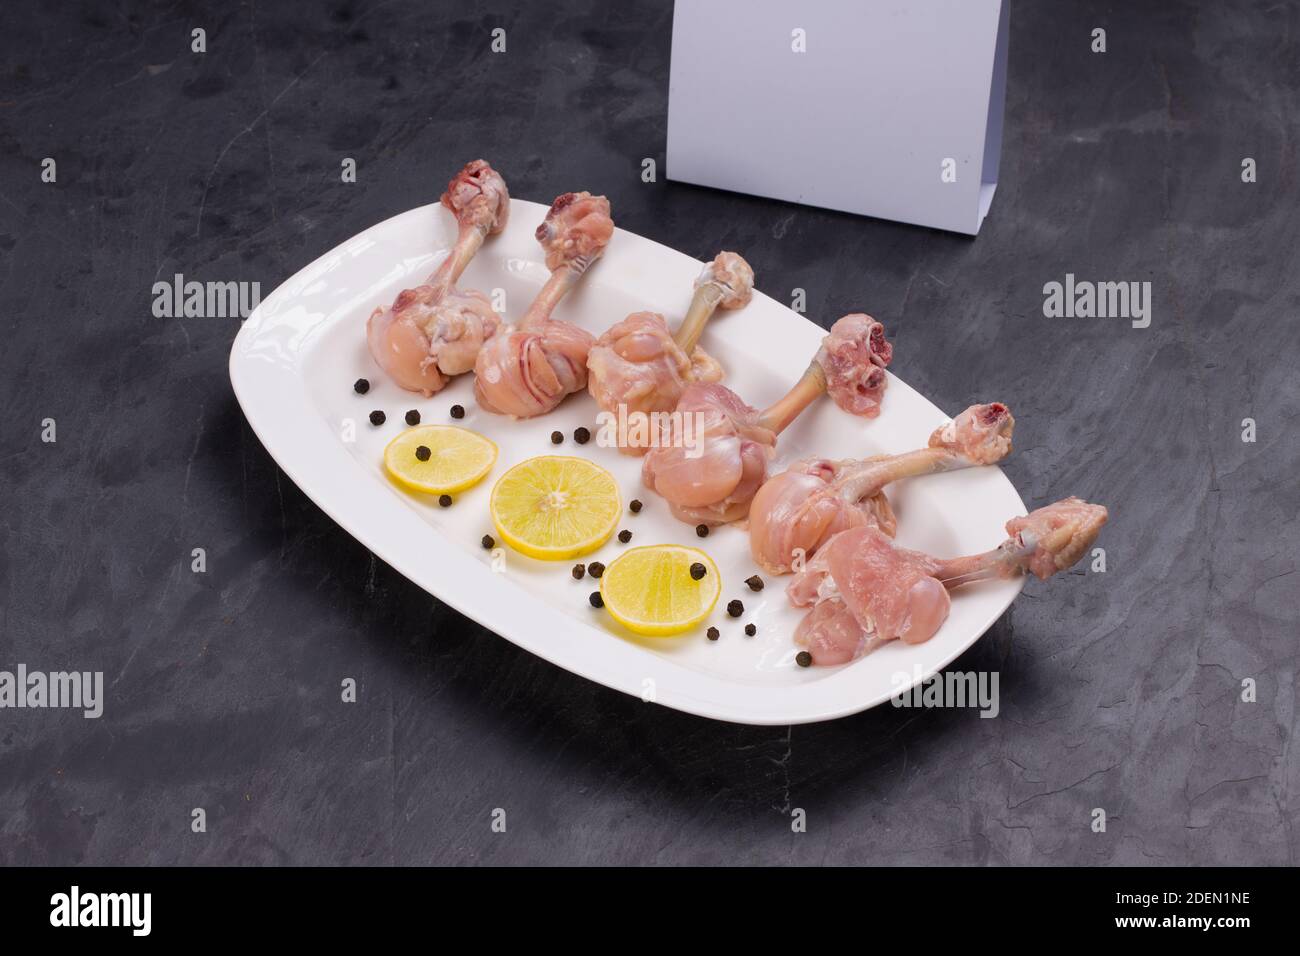 Rohes Huhn Lollipop, sechs Stücke Huhn Lollipop auf einem angeordnet Servierteller weiß und mit Zitronenscheiben und schwarz garniert Mit Lieferung pfeffern Stockfoto